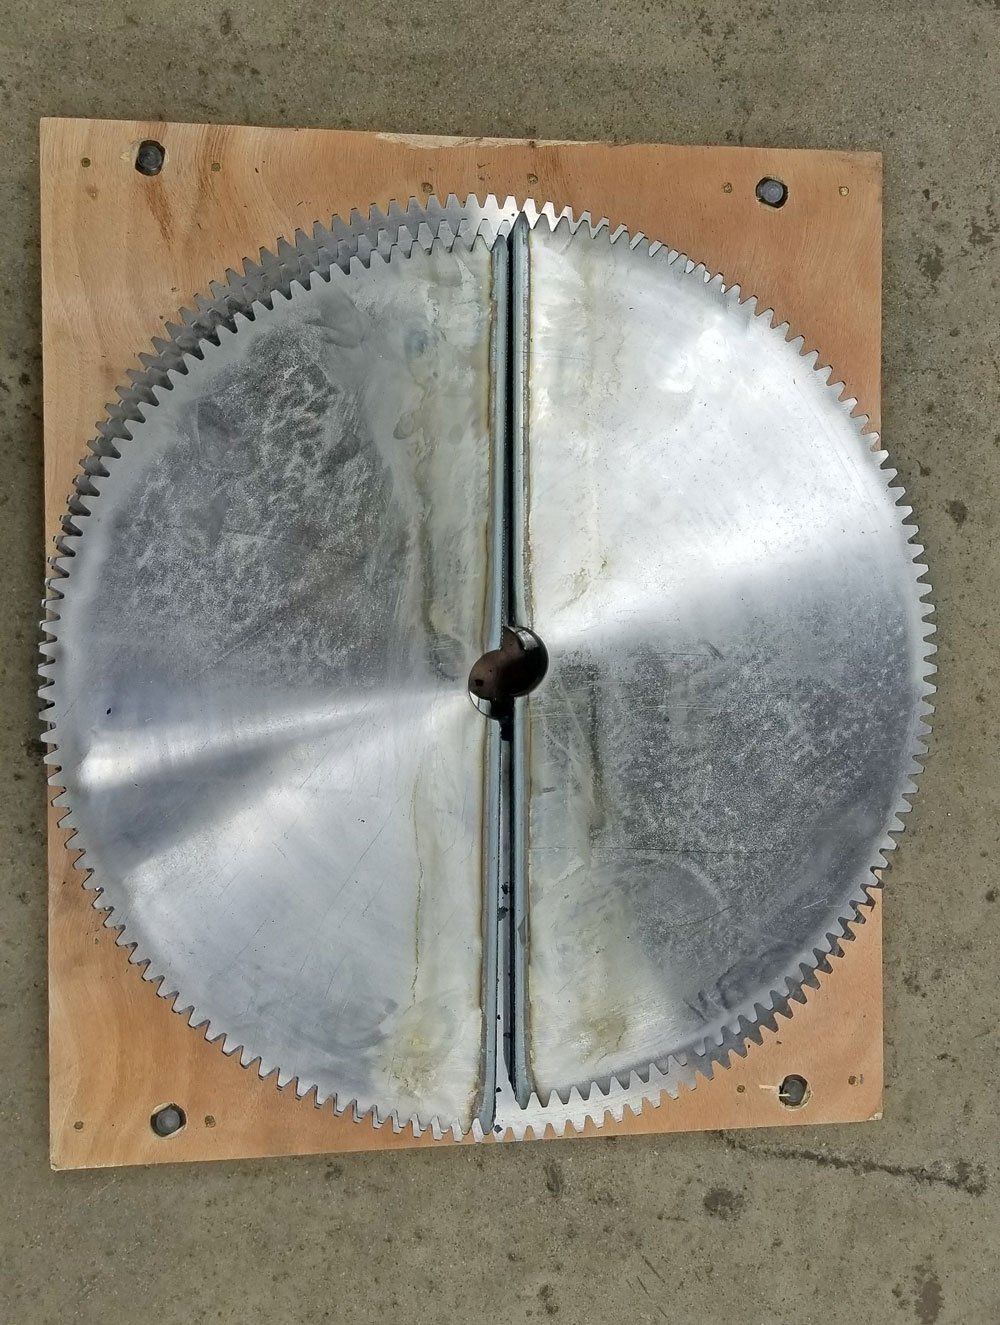 Tilt gears for Model 1504 welding positioner